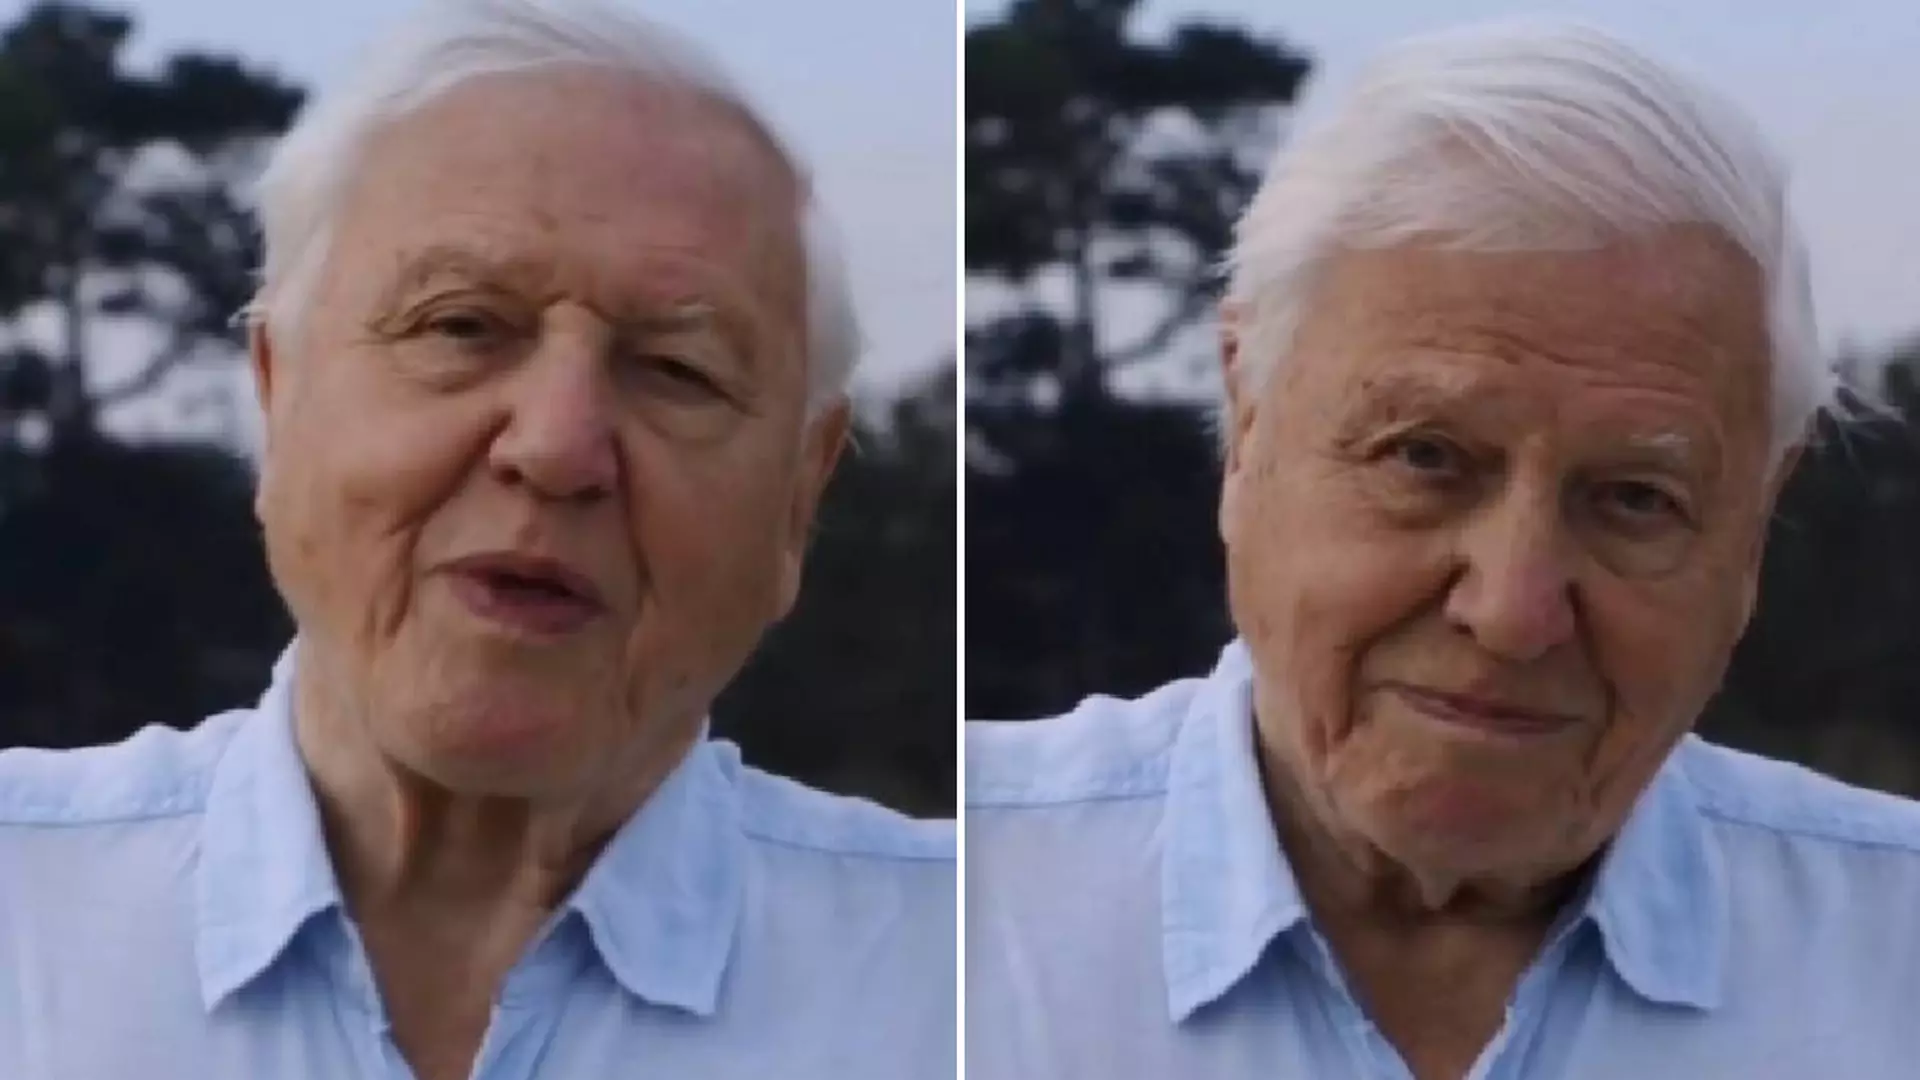 "Świat ma kłopoty". 94-letni David Attenborough założył Instagrama i zdobył milion fanów